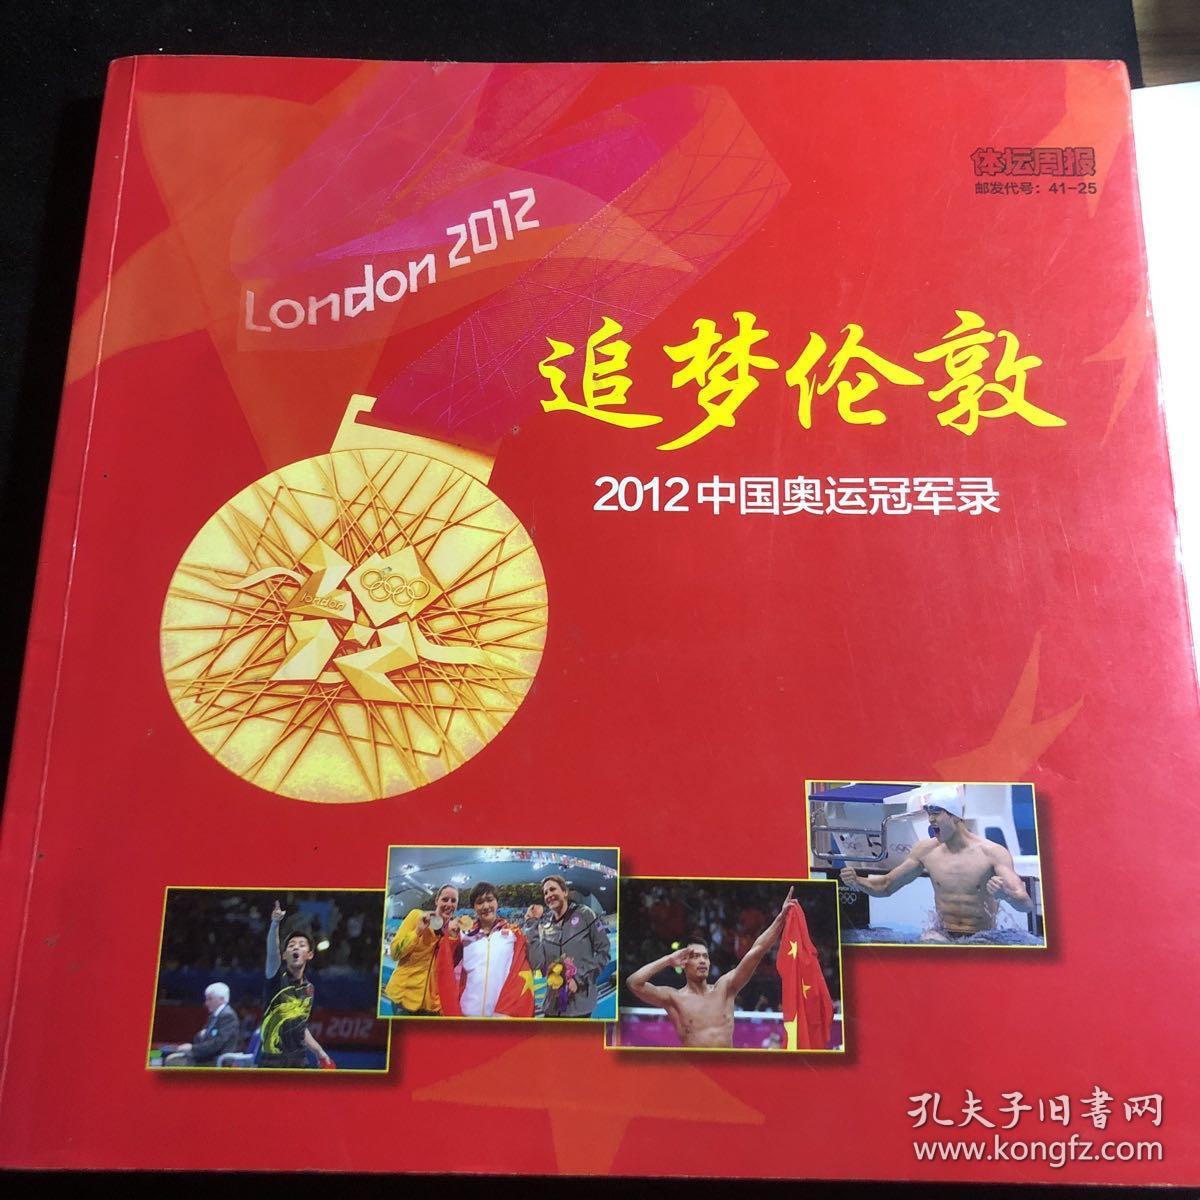 追梦伦敦 2012中国奥运冠军录